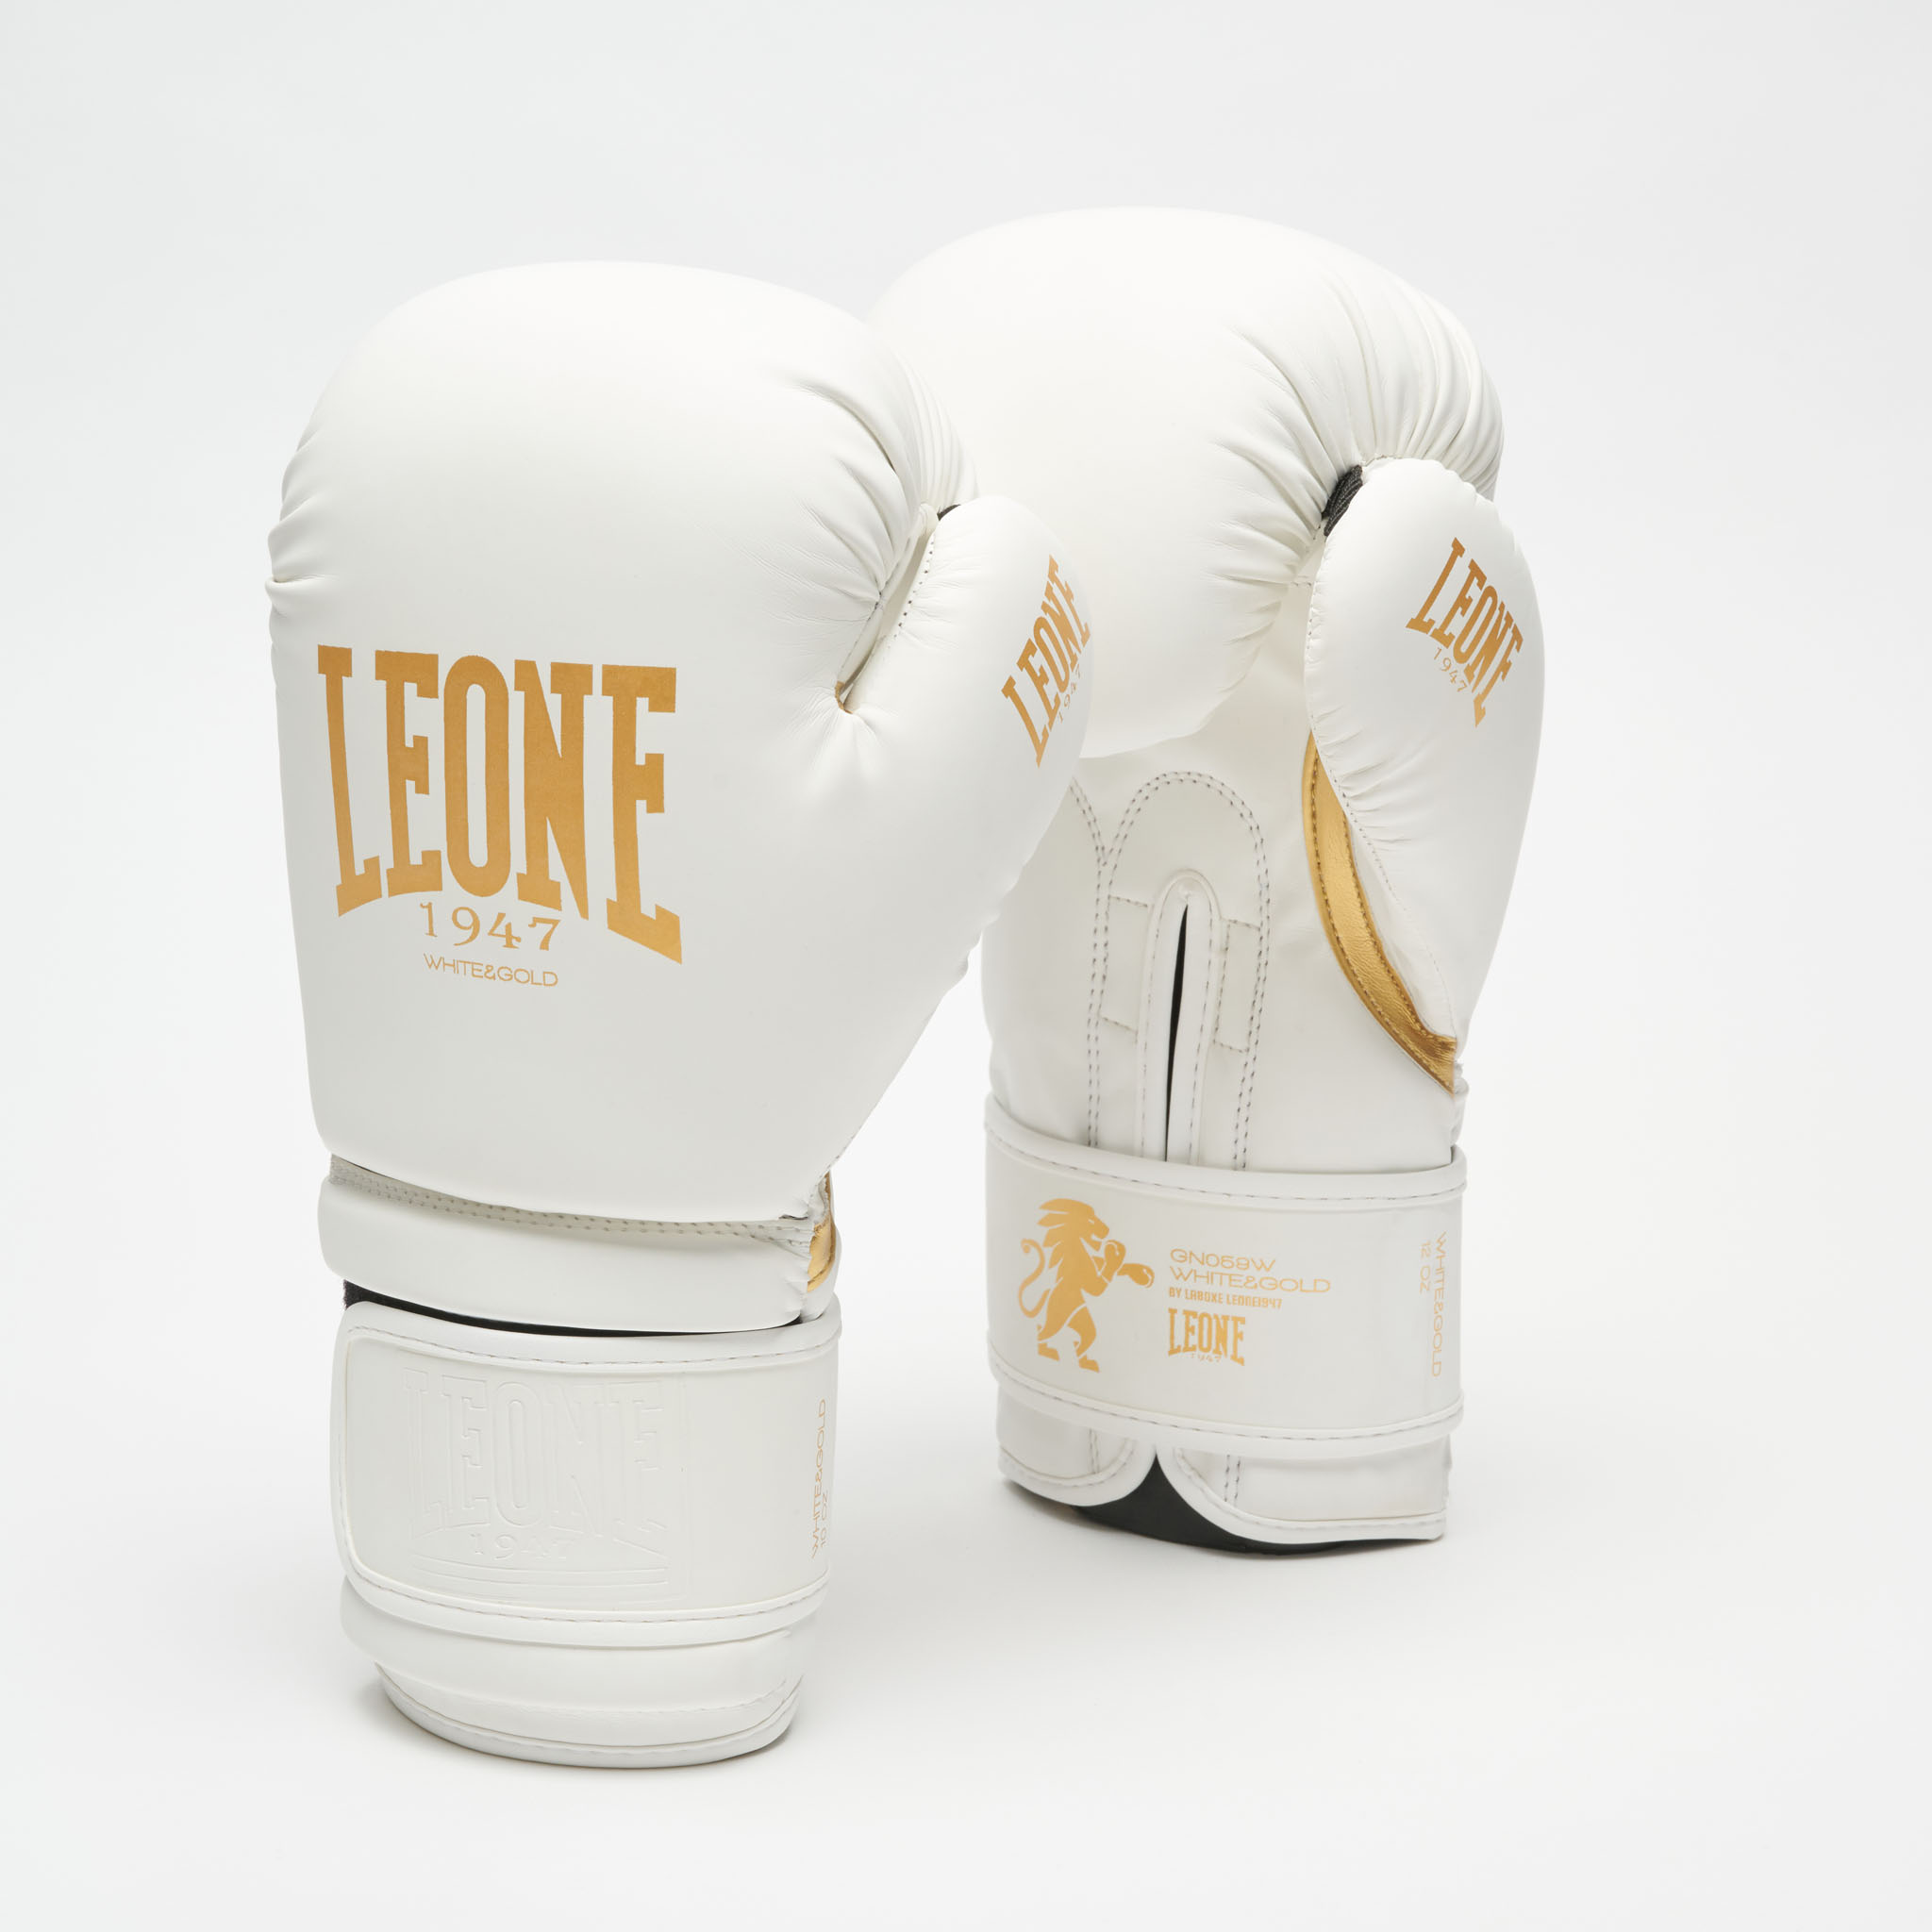 GN059W Guantes de Boxeo Leone 1947 “White & Gold” Color blanco